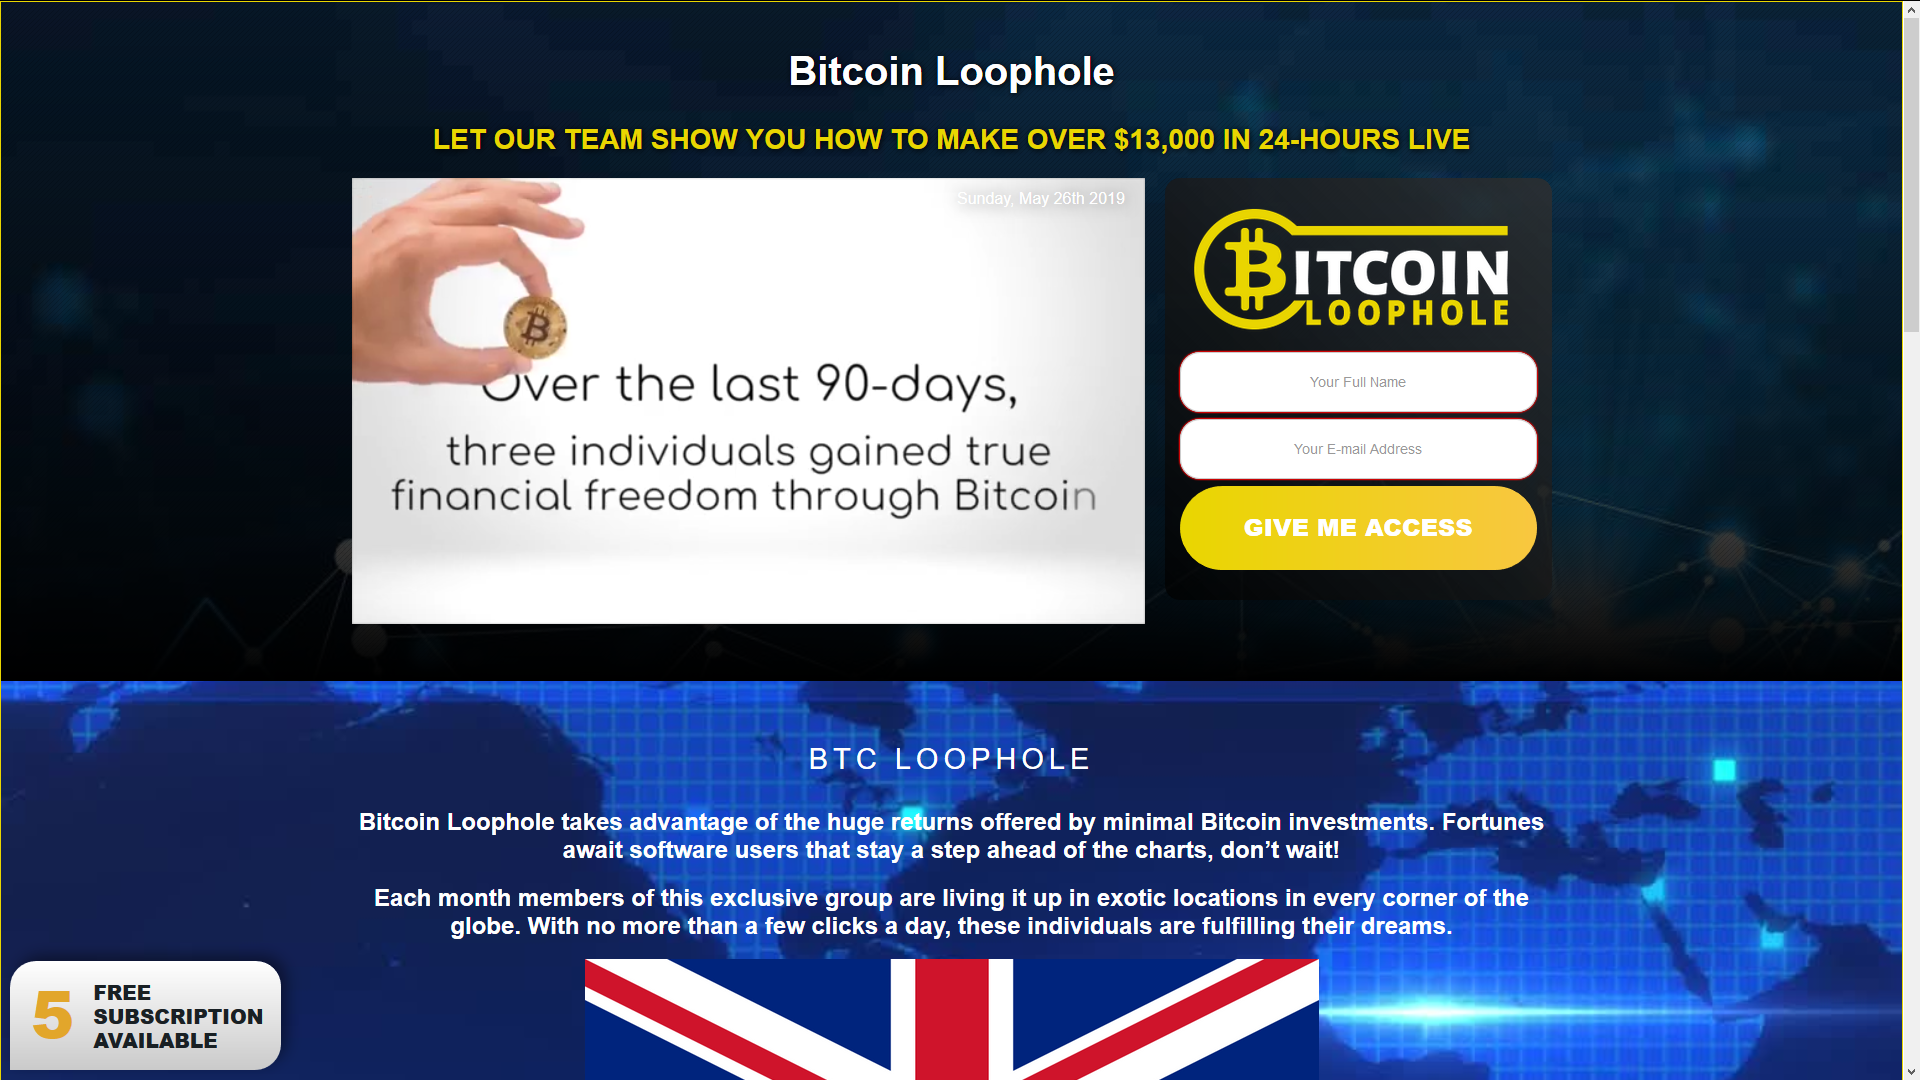 Bitcoin Loophole nó đáng tin cậy? | 🥇 Đọc trước khi đầu tư